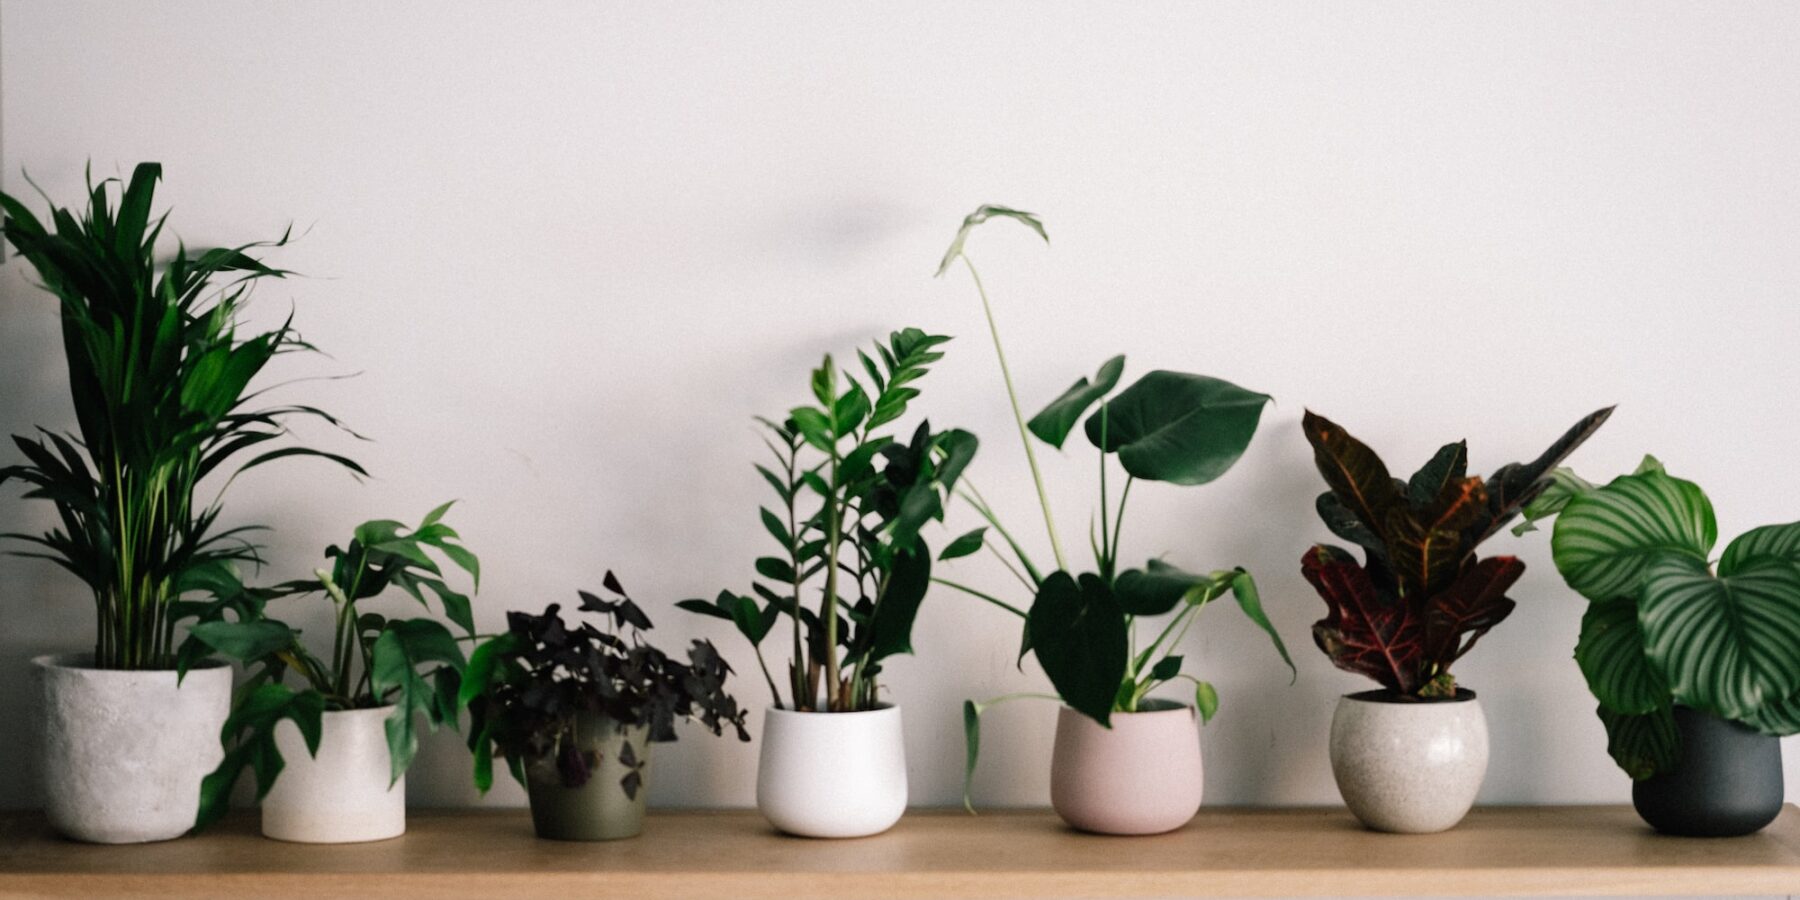 Rośliny doniczkowe jako naturalny filtr powietrza w domu #powietrze #rośliny #życie - ciekawostki.app